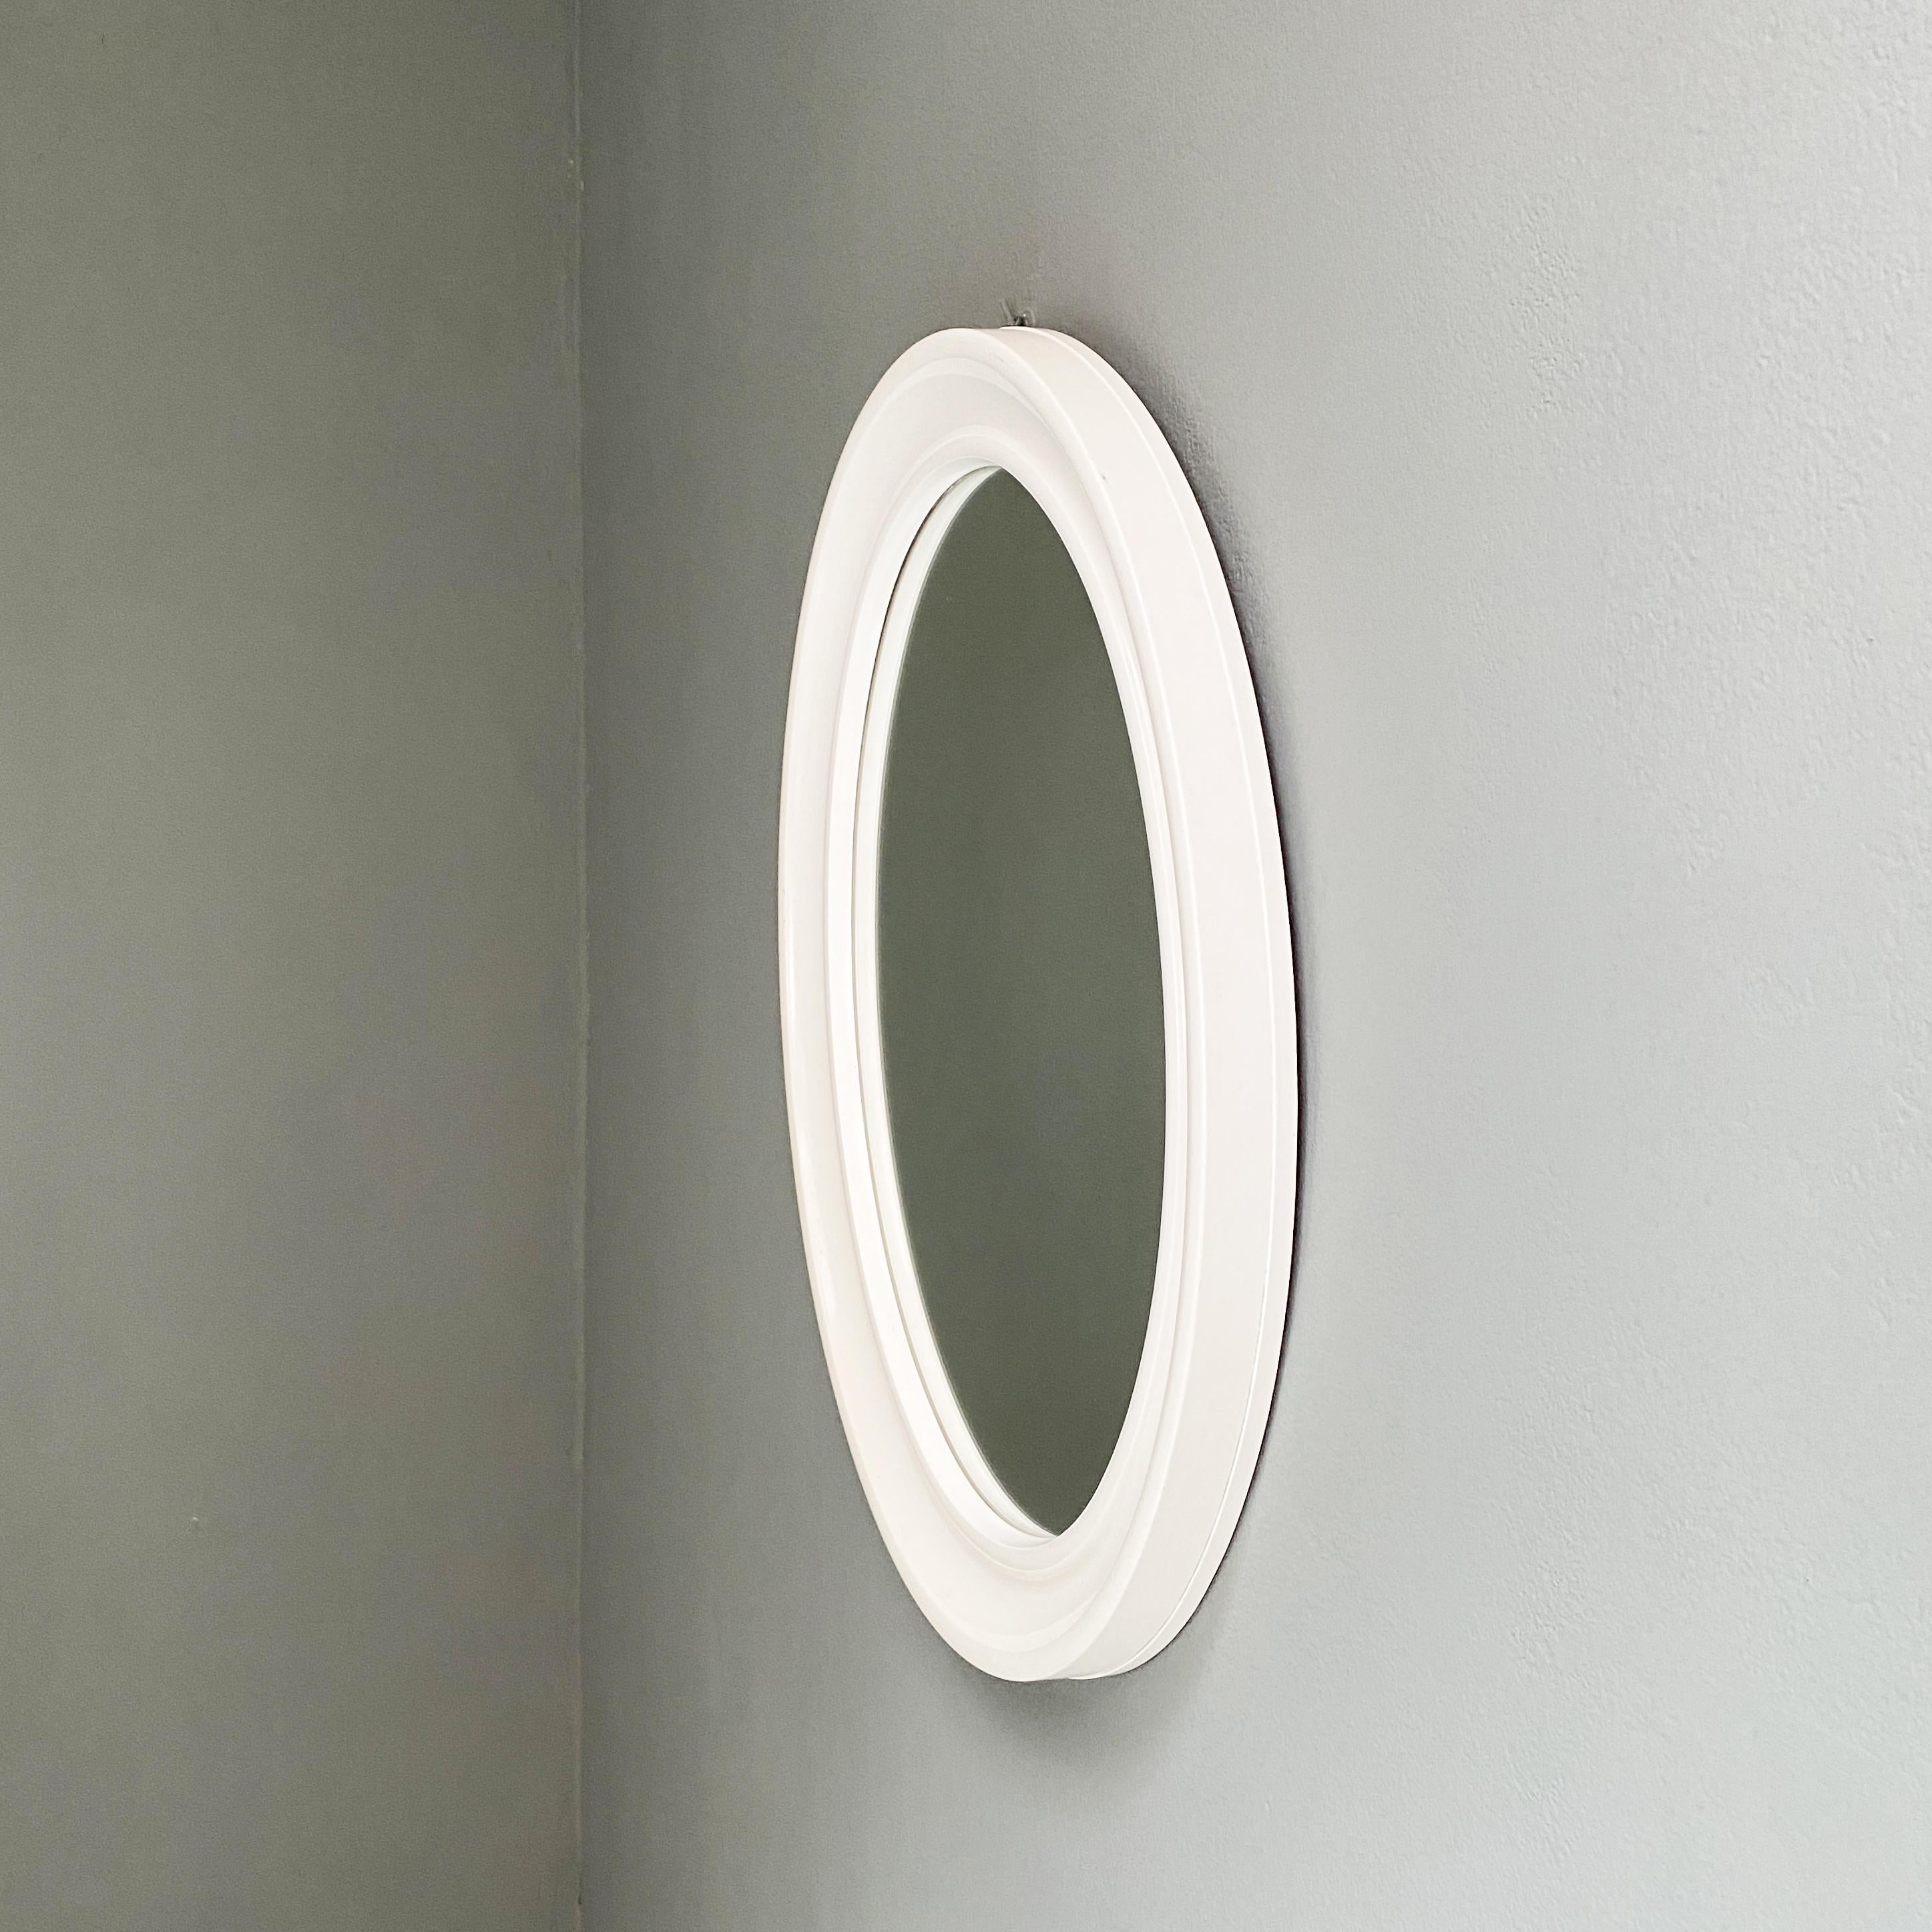 Modern Oval White Plastic Mirror by Carrara & Matta, 1980s For Sale 1